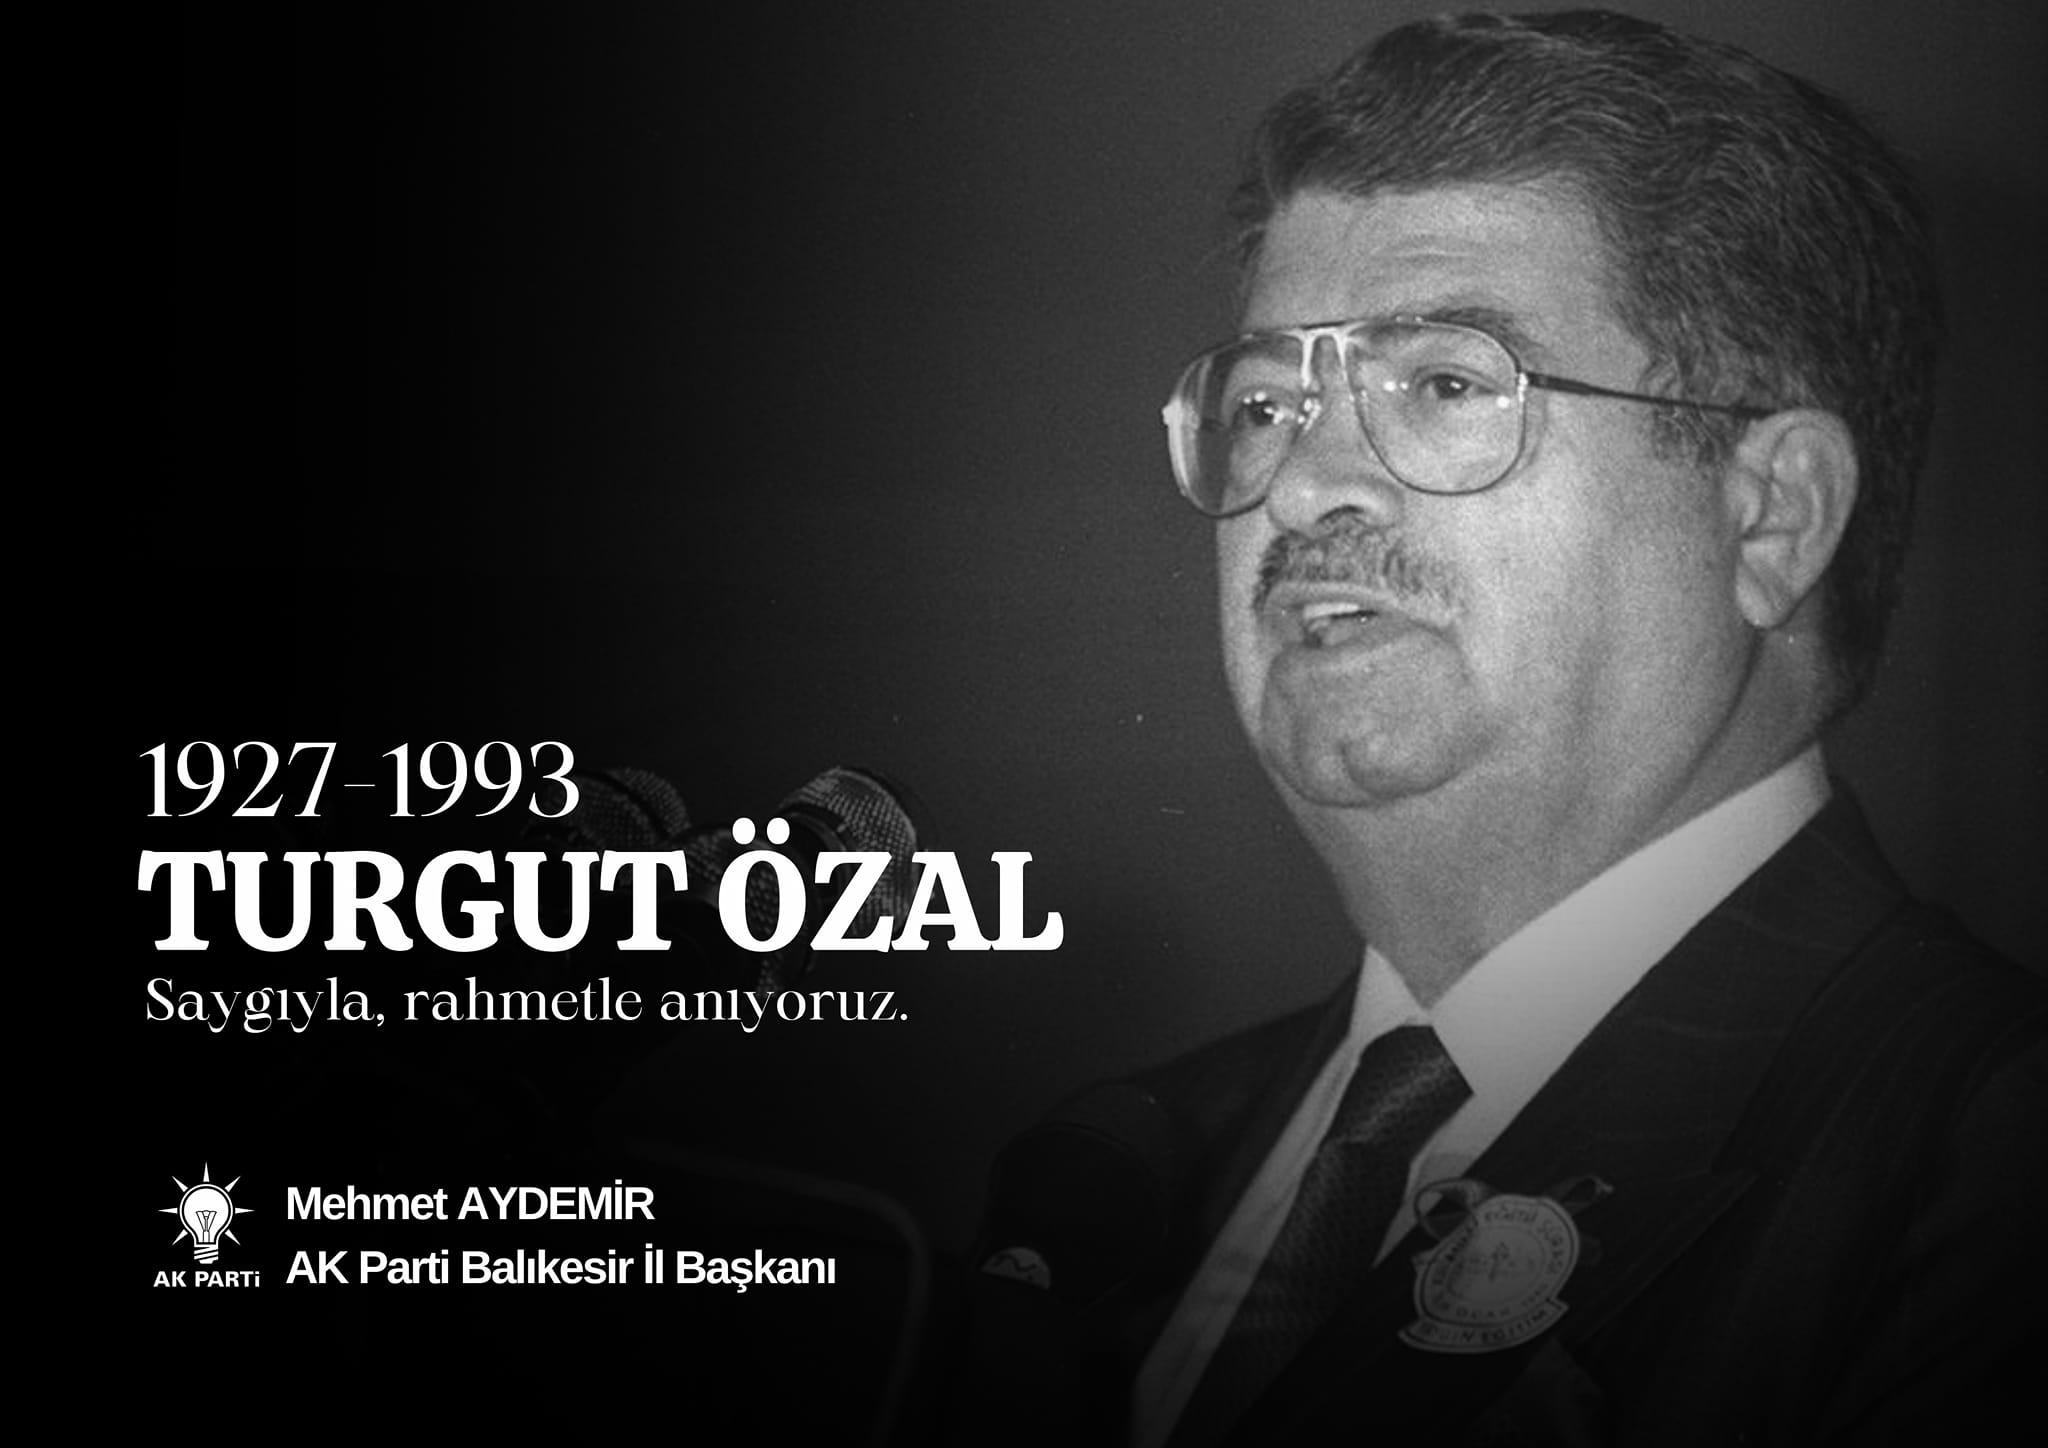 Türkiye'nin 8. Cumhurbaşkanı Turgut Özal, vefatının yıldönümünde minnetle anılıyor